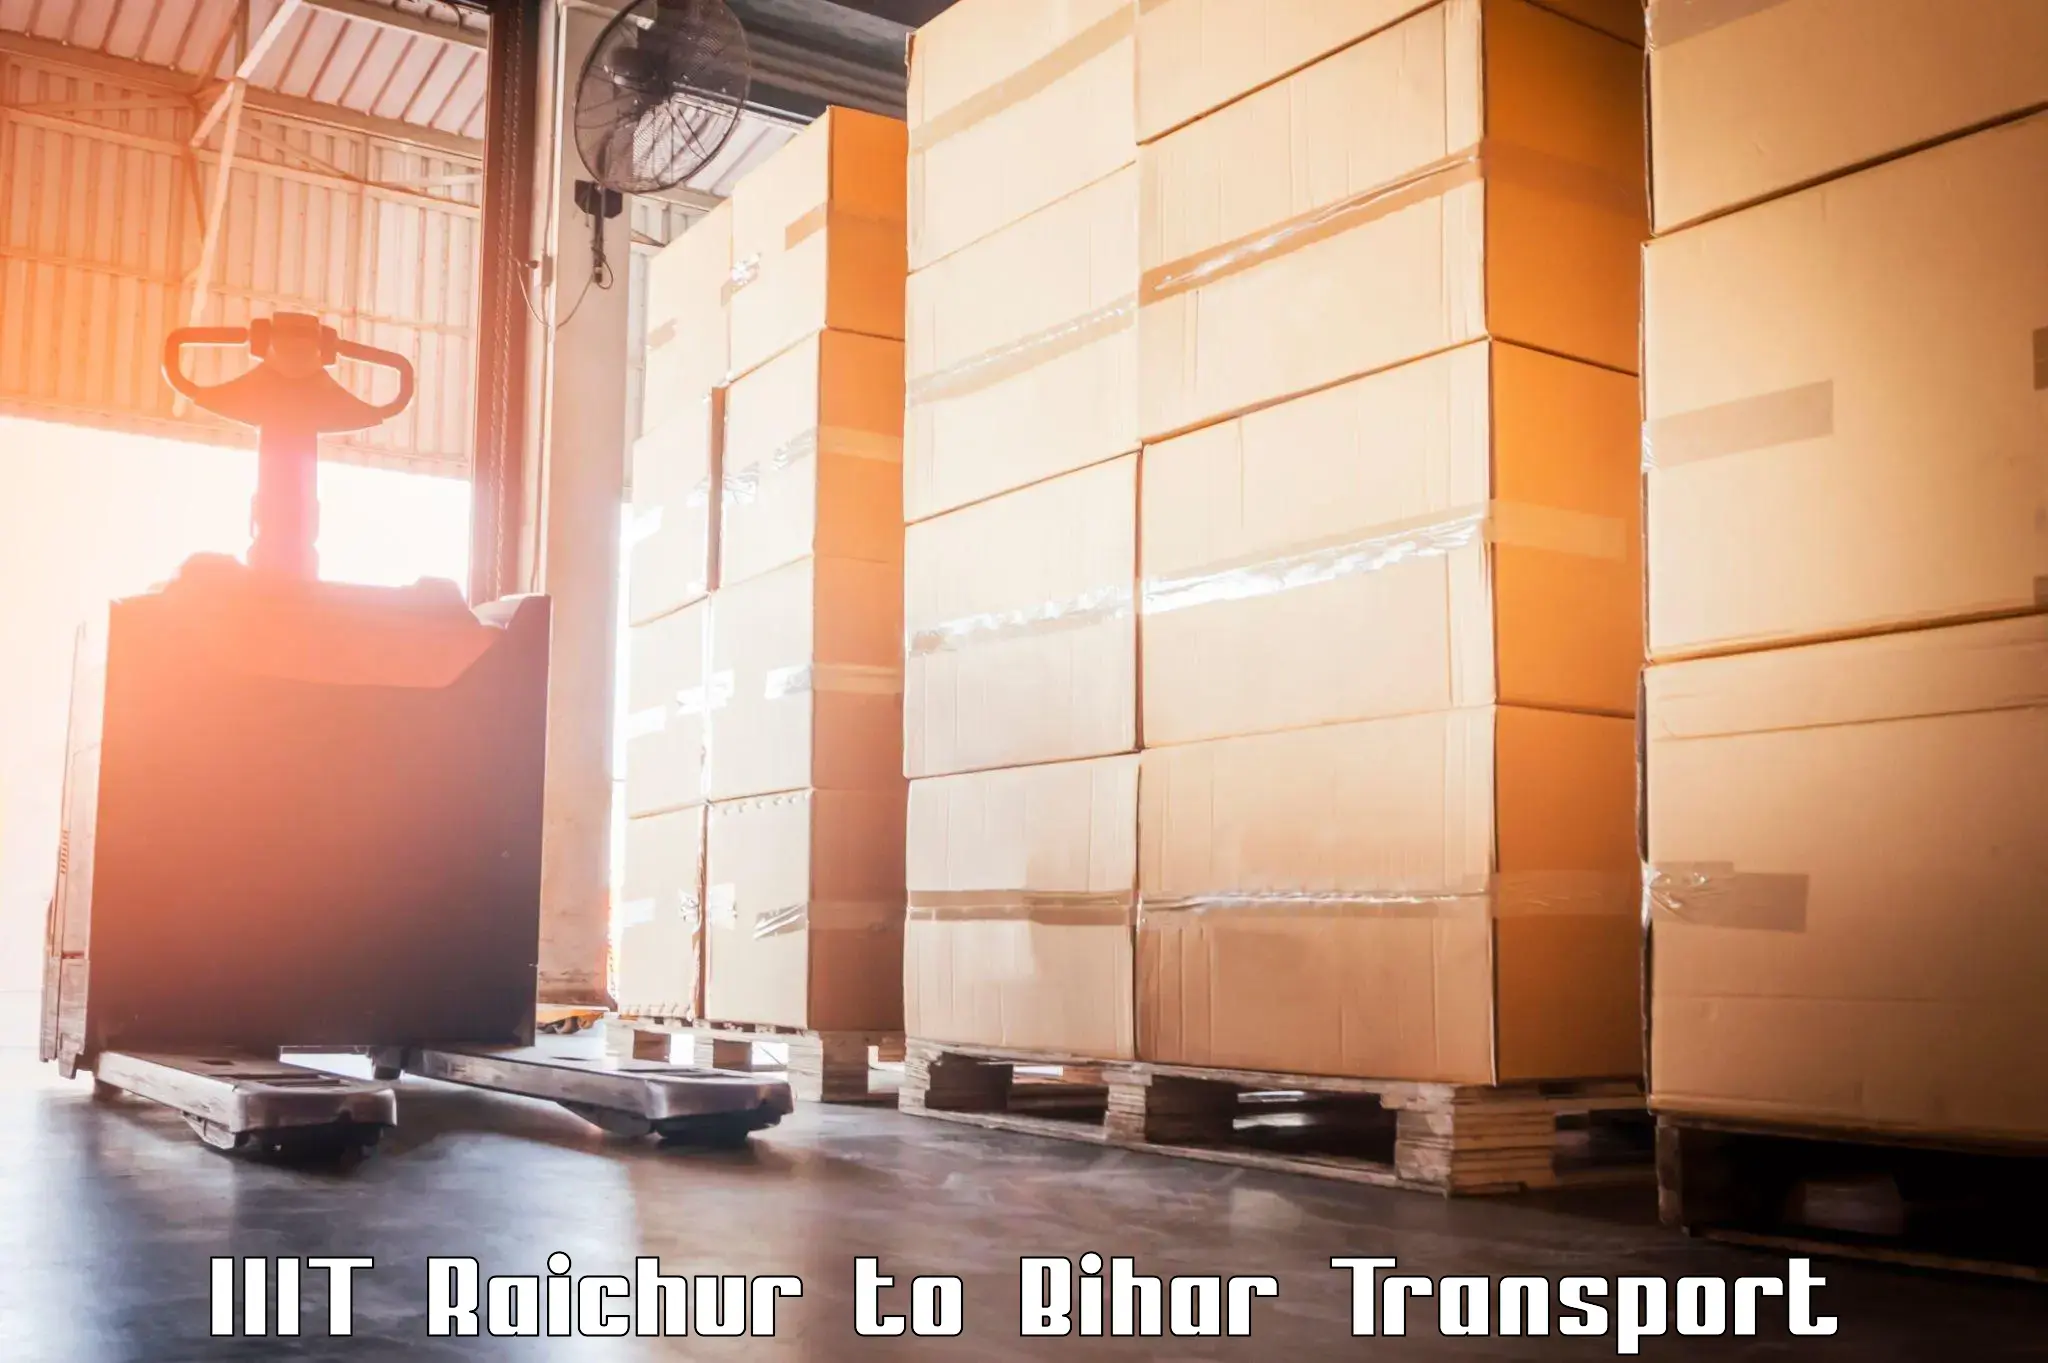 Cargo transportation services IIIT Raichur to Lakhisarai